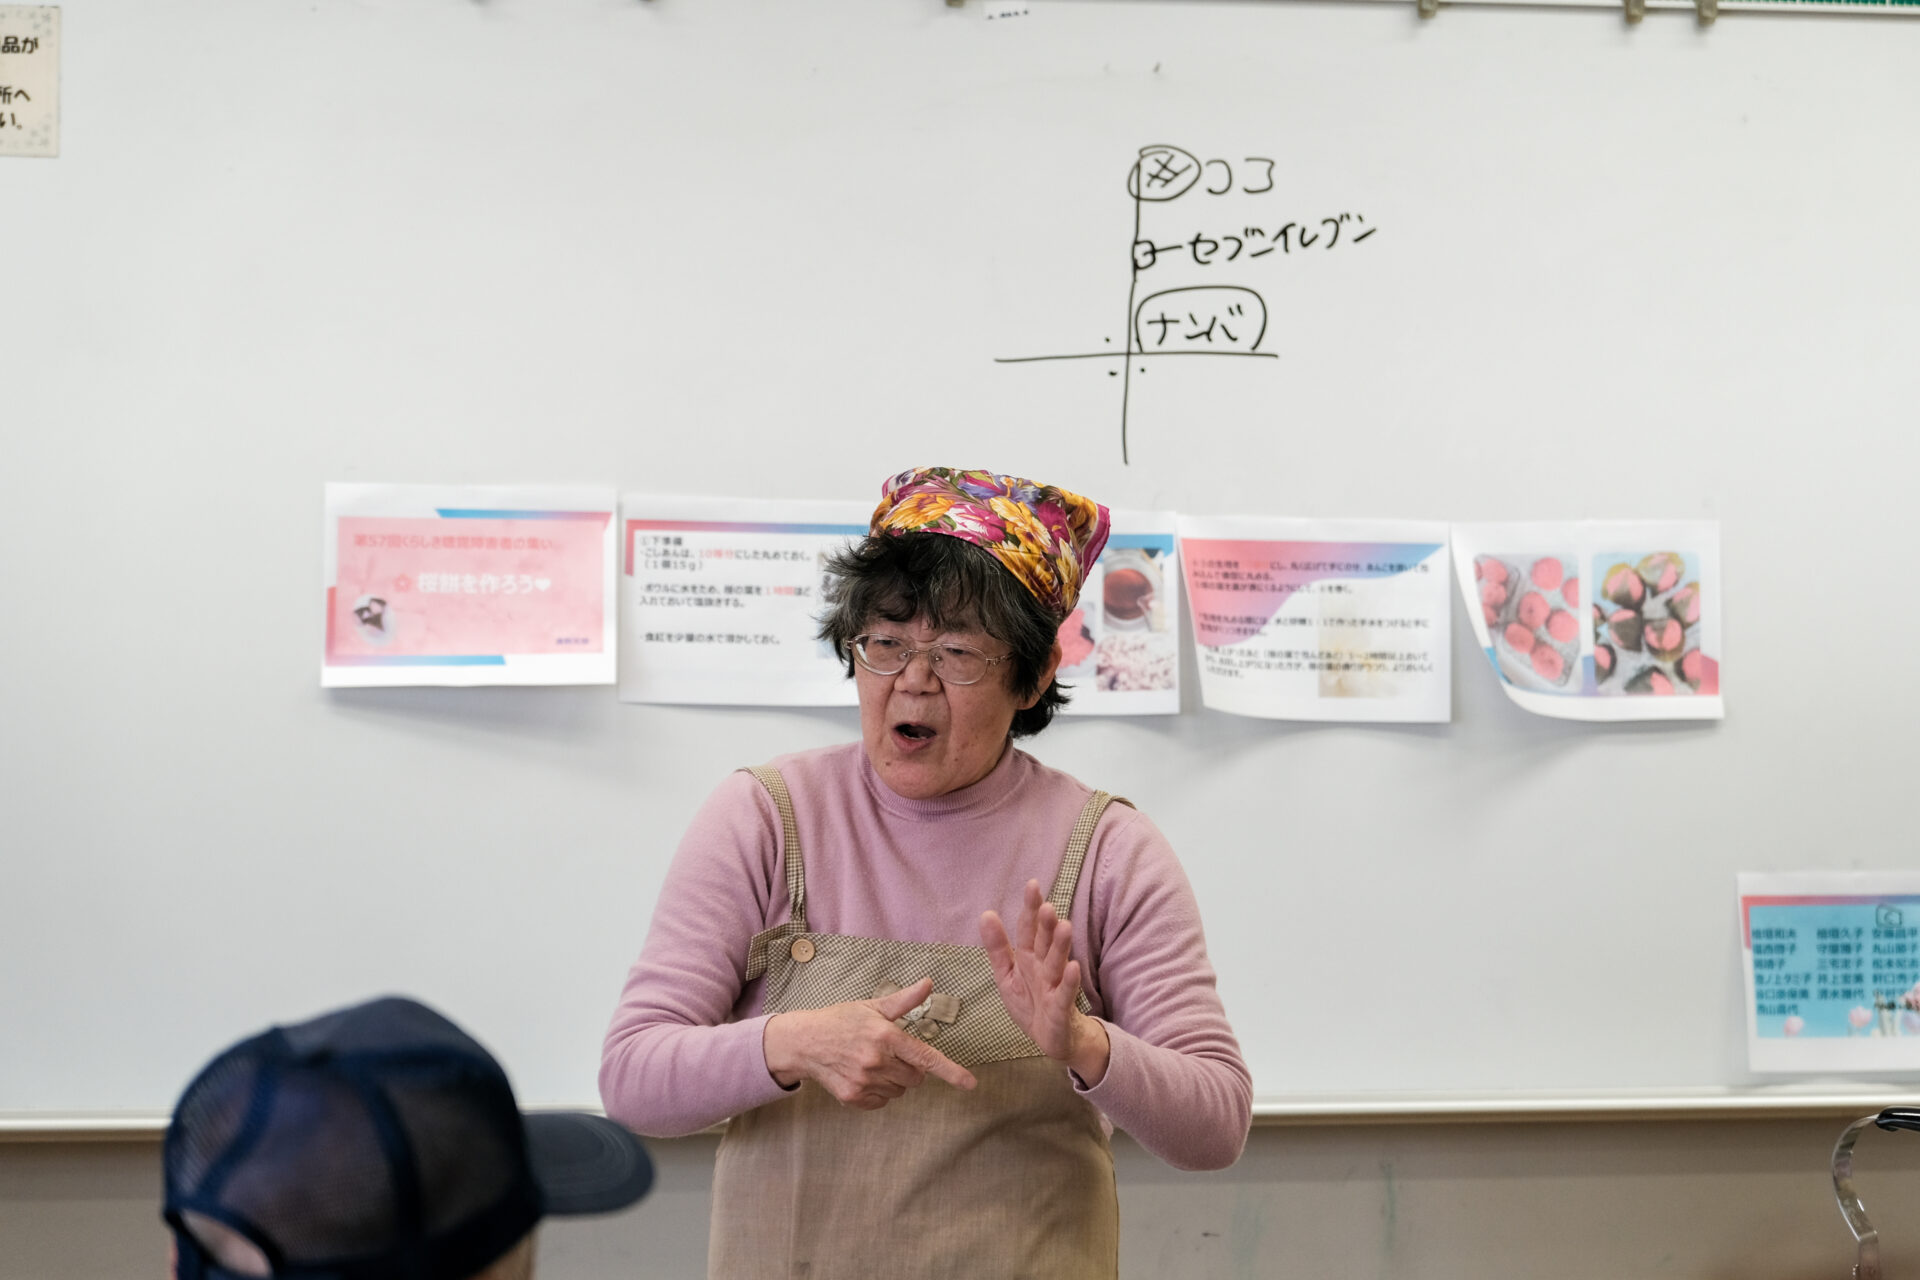 「我が家の桜餅の作り方」を紹介する参加者